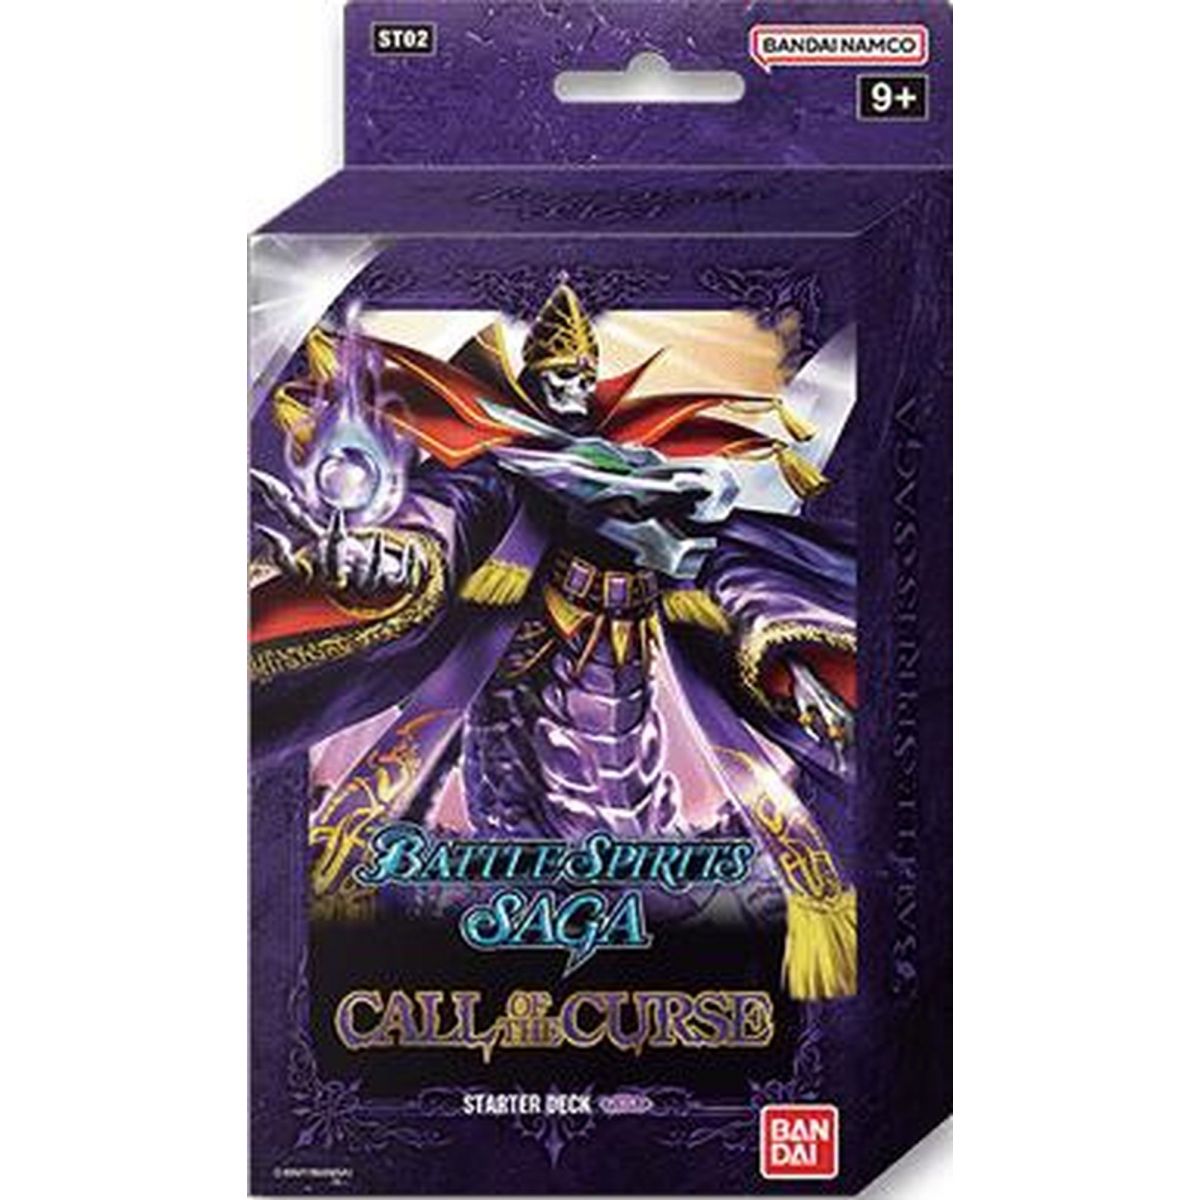 Item Battle Spirits Saga - Starter Deck - Purple - ST02 Call of the Curse - EN